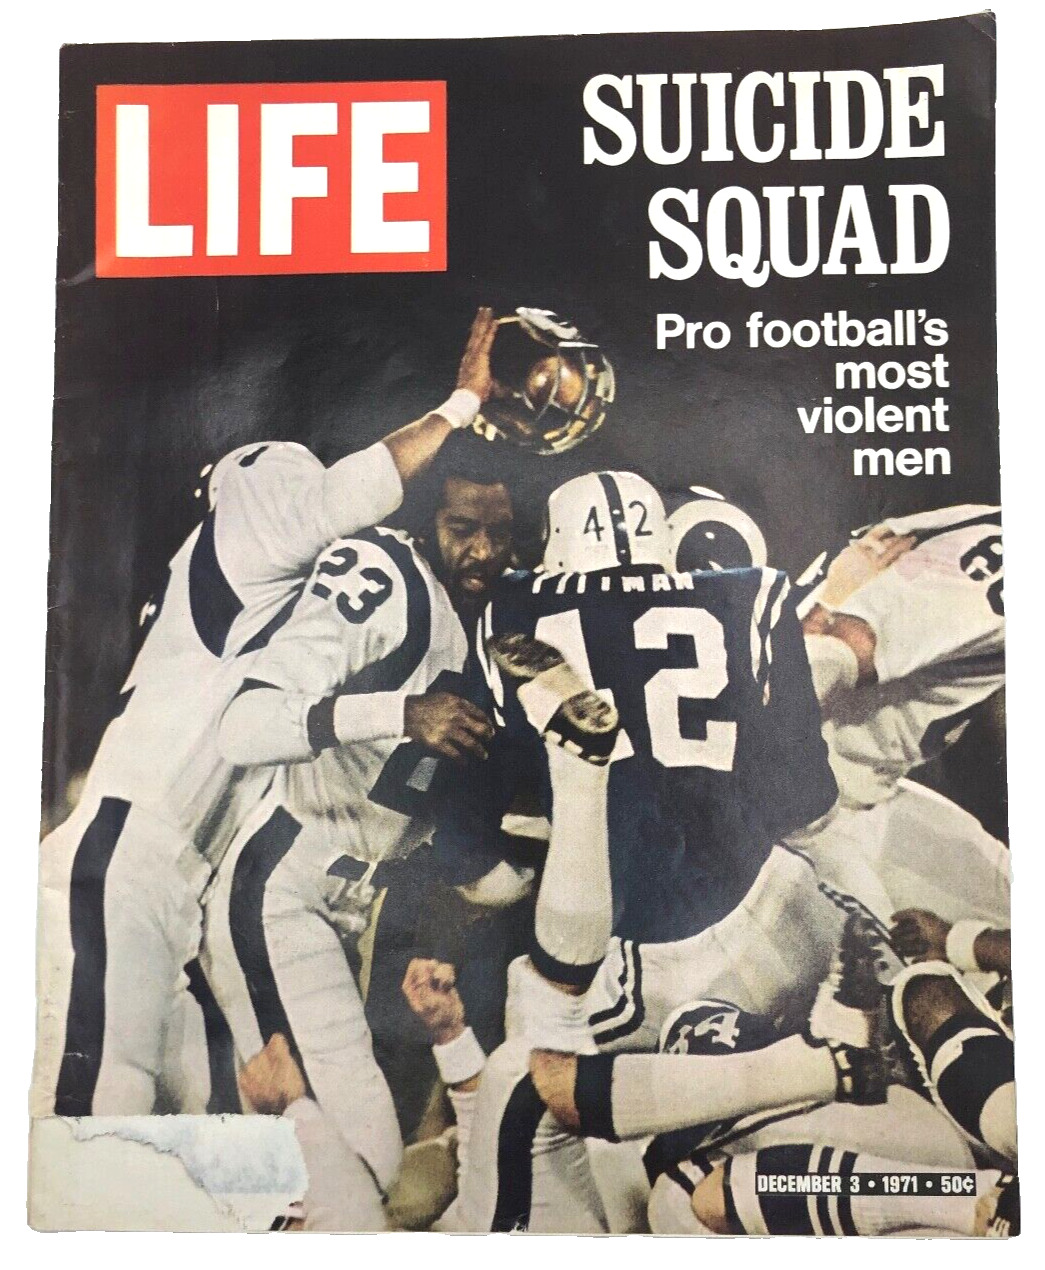 Vtg LIFE Magazine December 3 1971 Suicide Squad Pro Footballs Most Violent Men